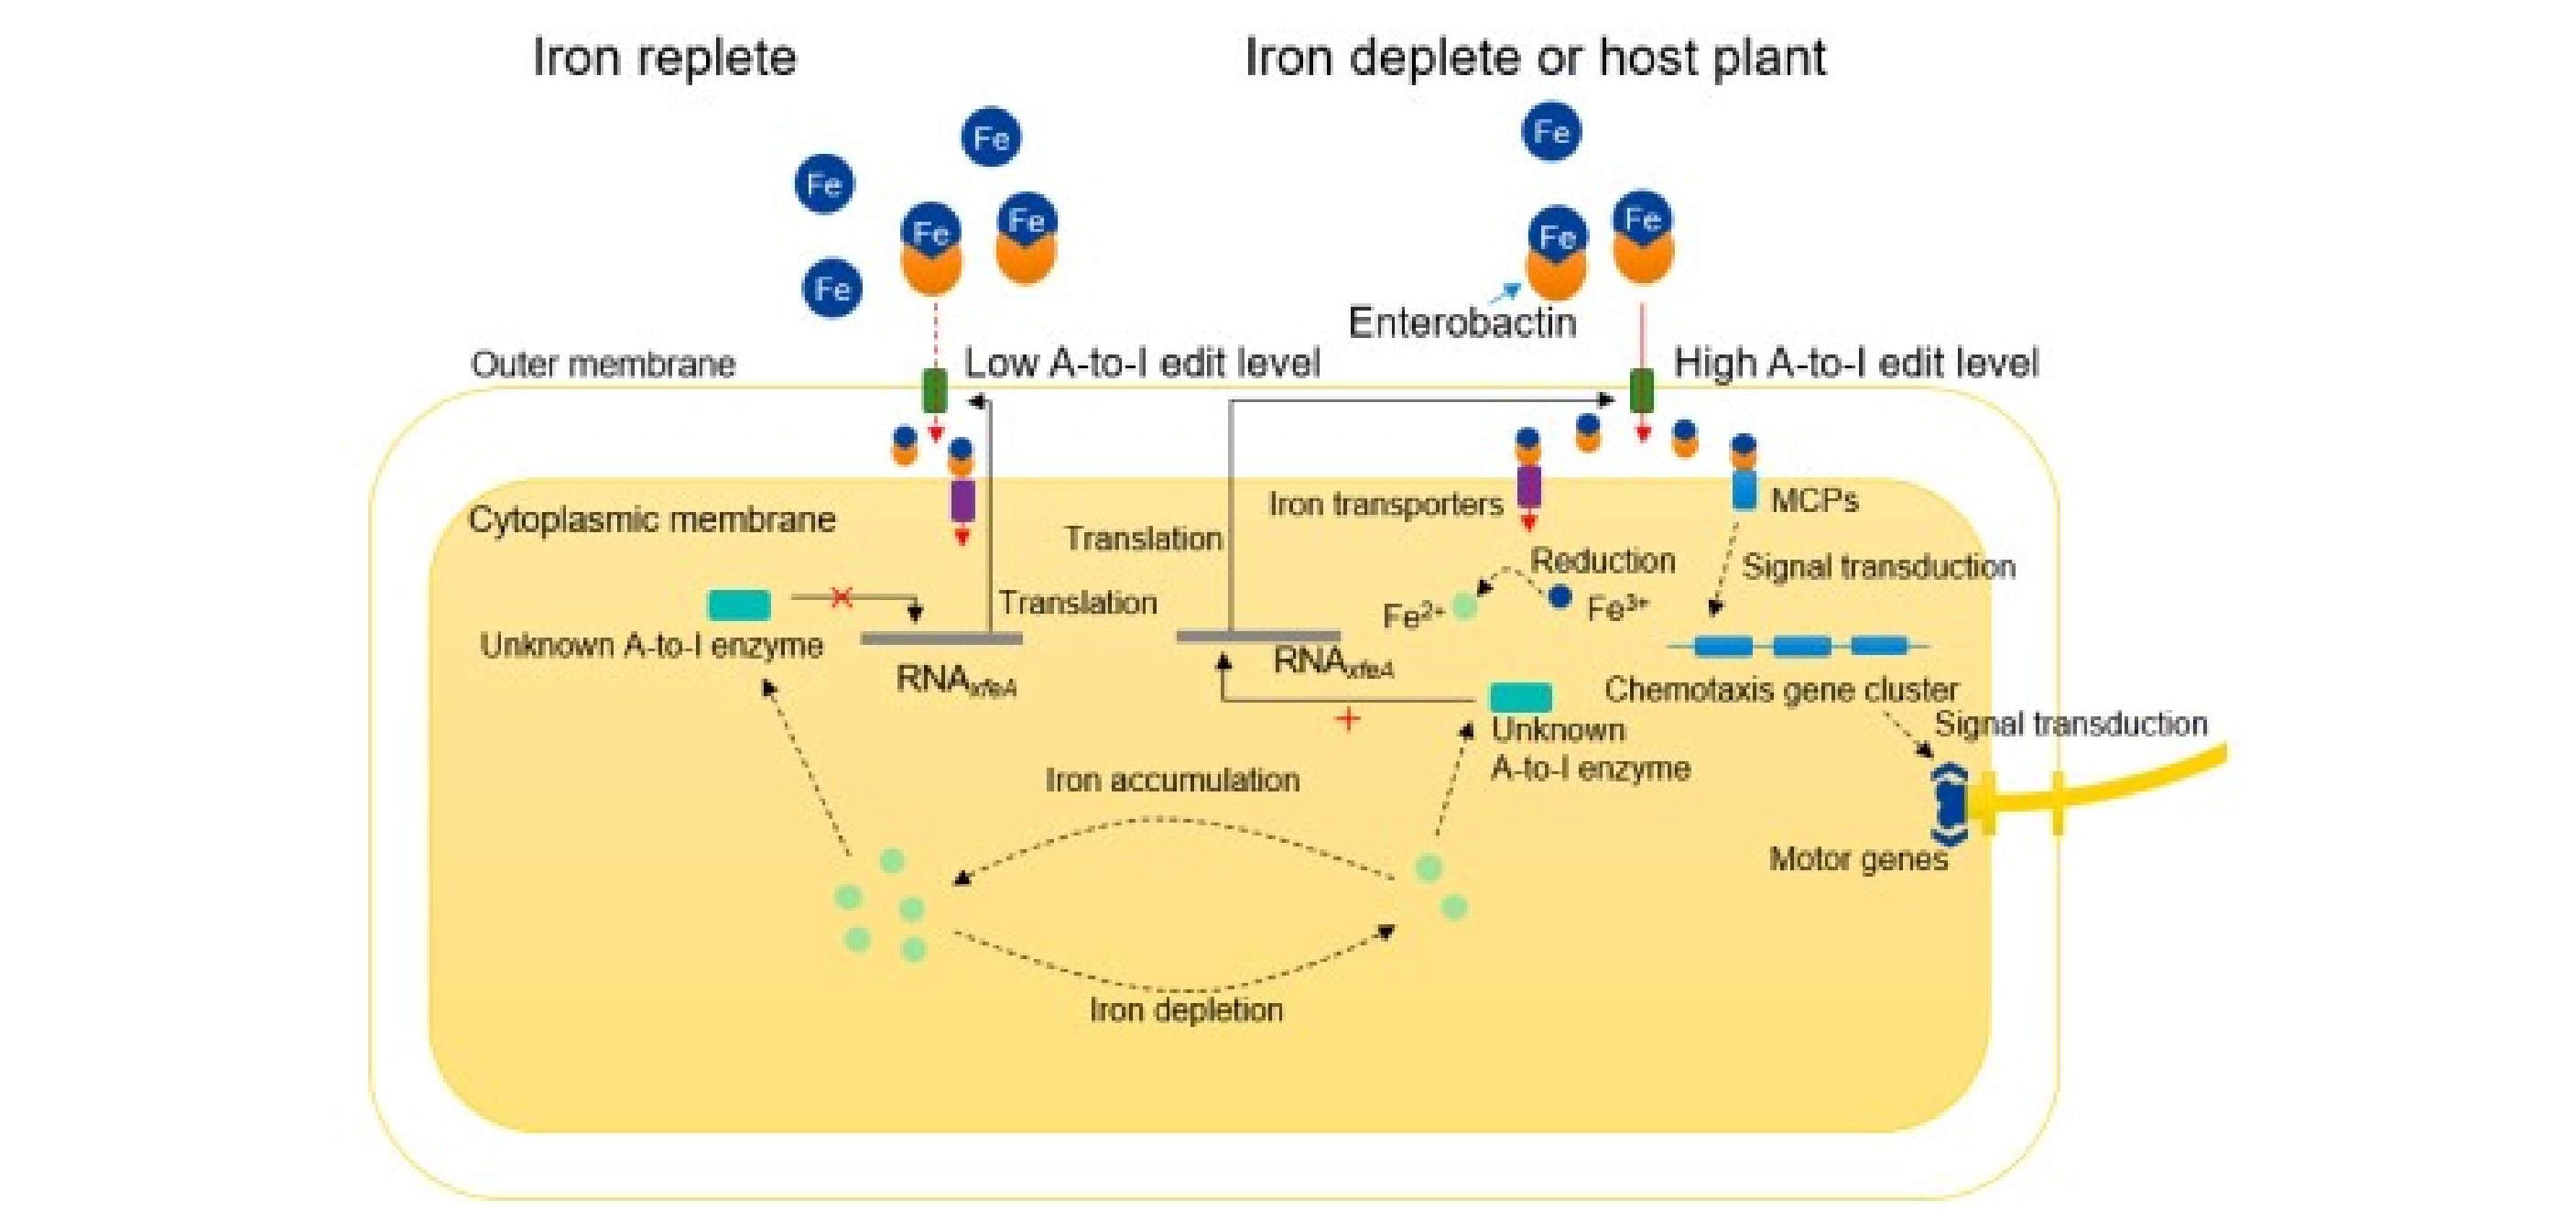 植物病原细菌通过A-to-I RNA编辑适应环境缺铁胁迫机制